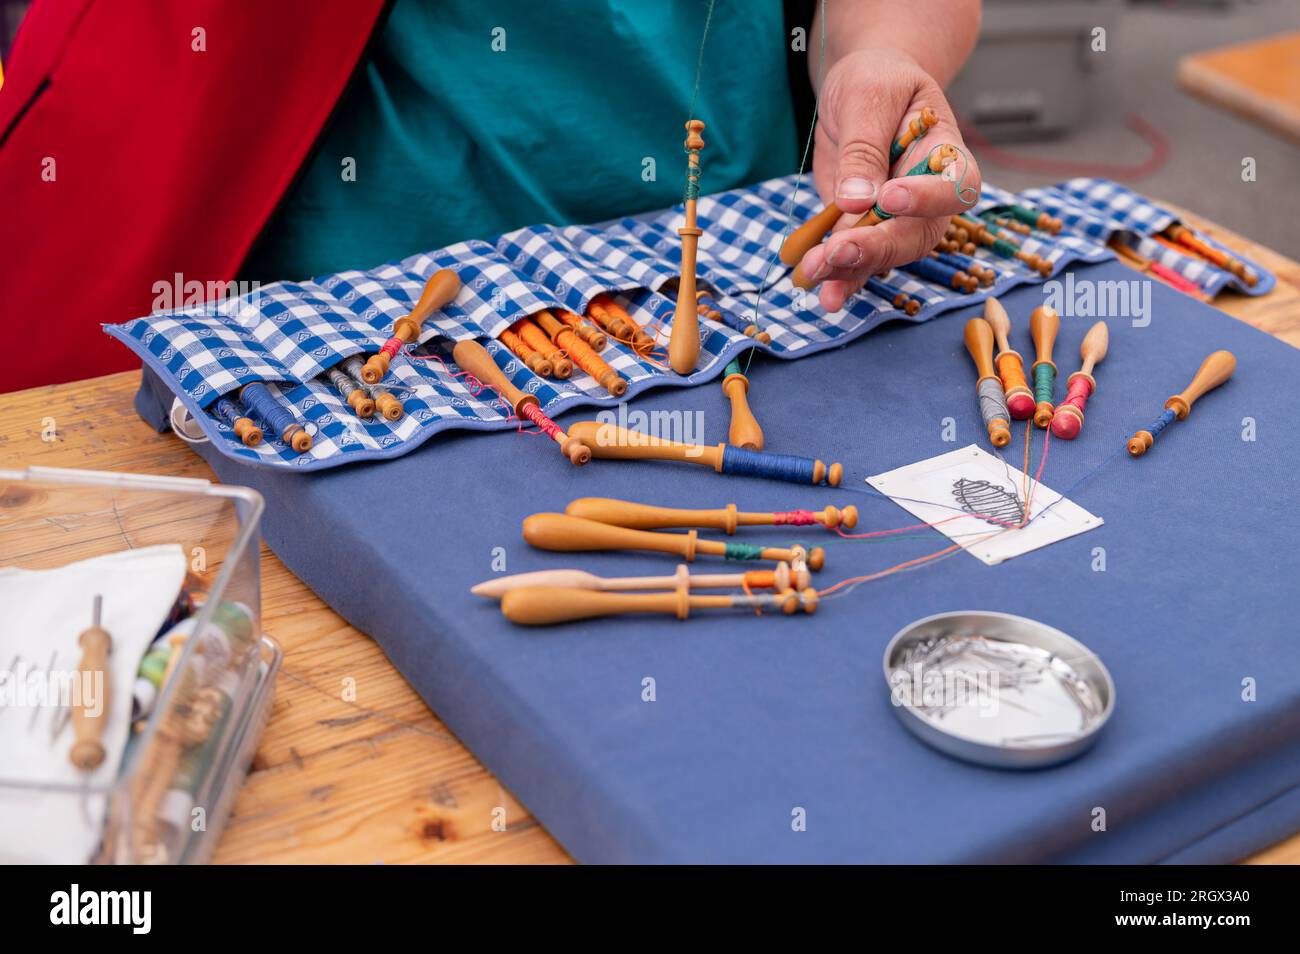 Hände von Menschen, die Spulenspitzen vorbereiten und herstellen. Farbenfrohe Spitzenfäden. Freizeitaktivität. Stockfoto